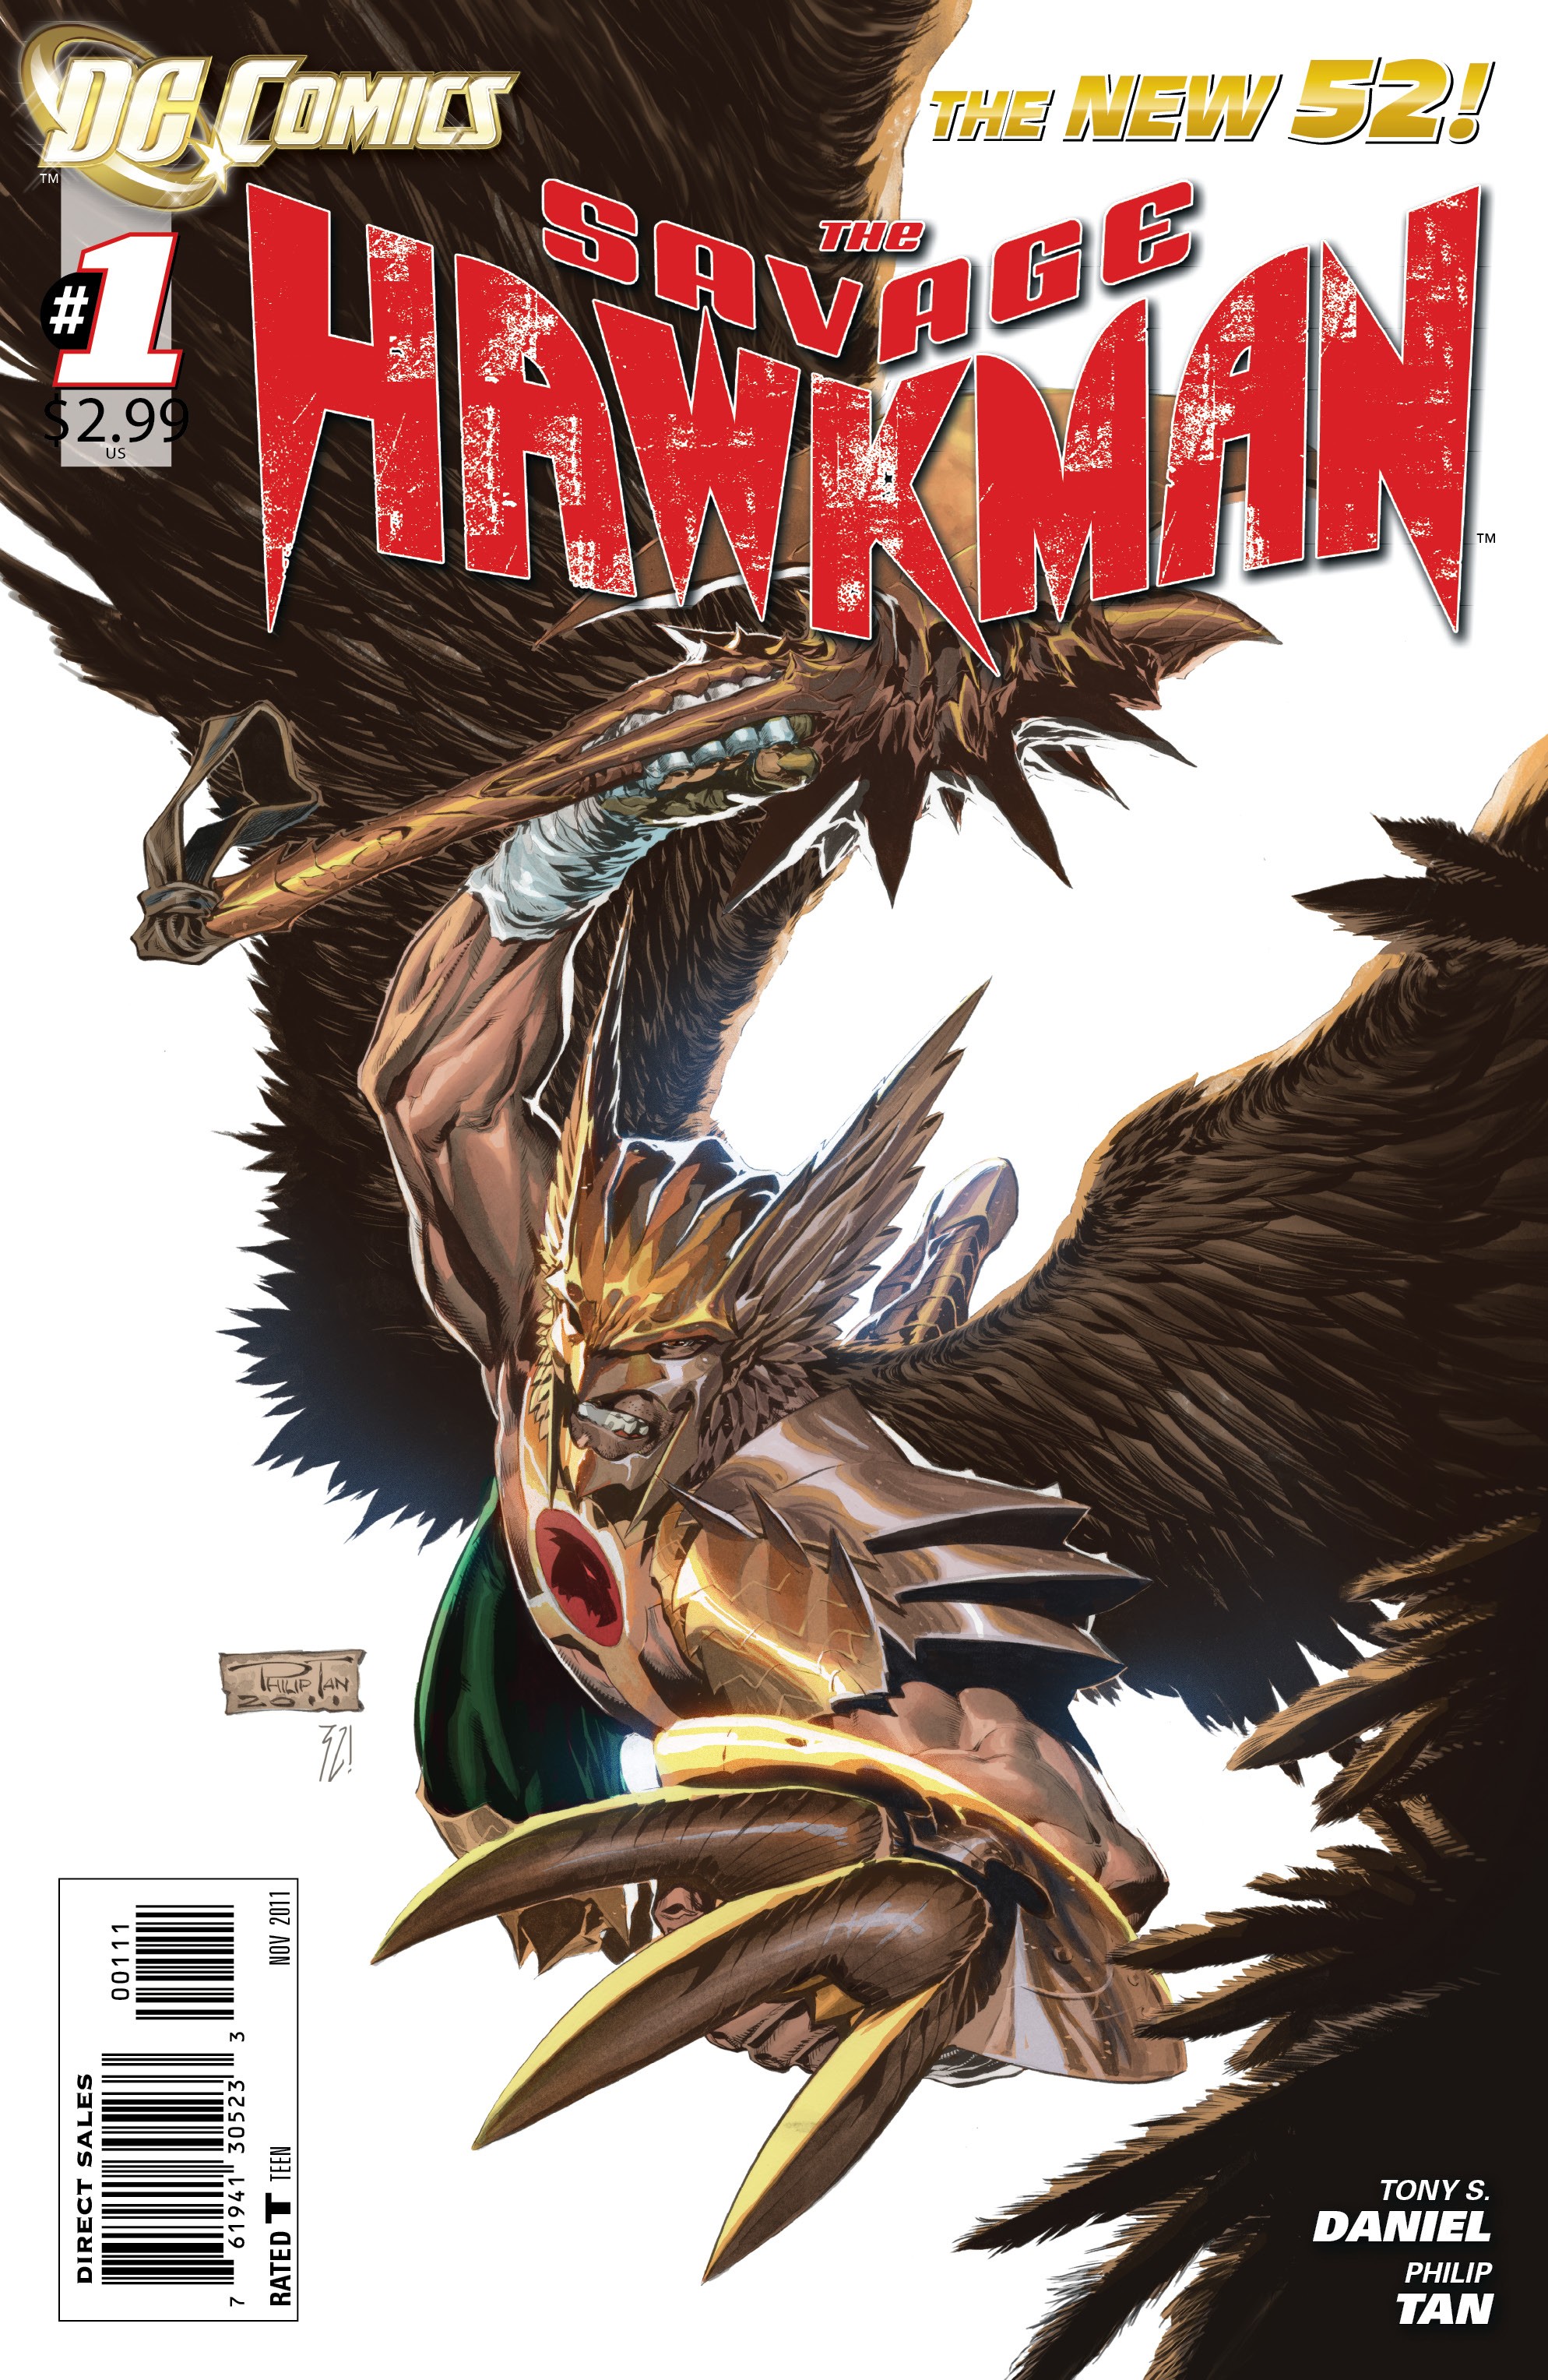 Savage Hawkman Vol. 1 #1